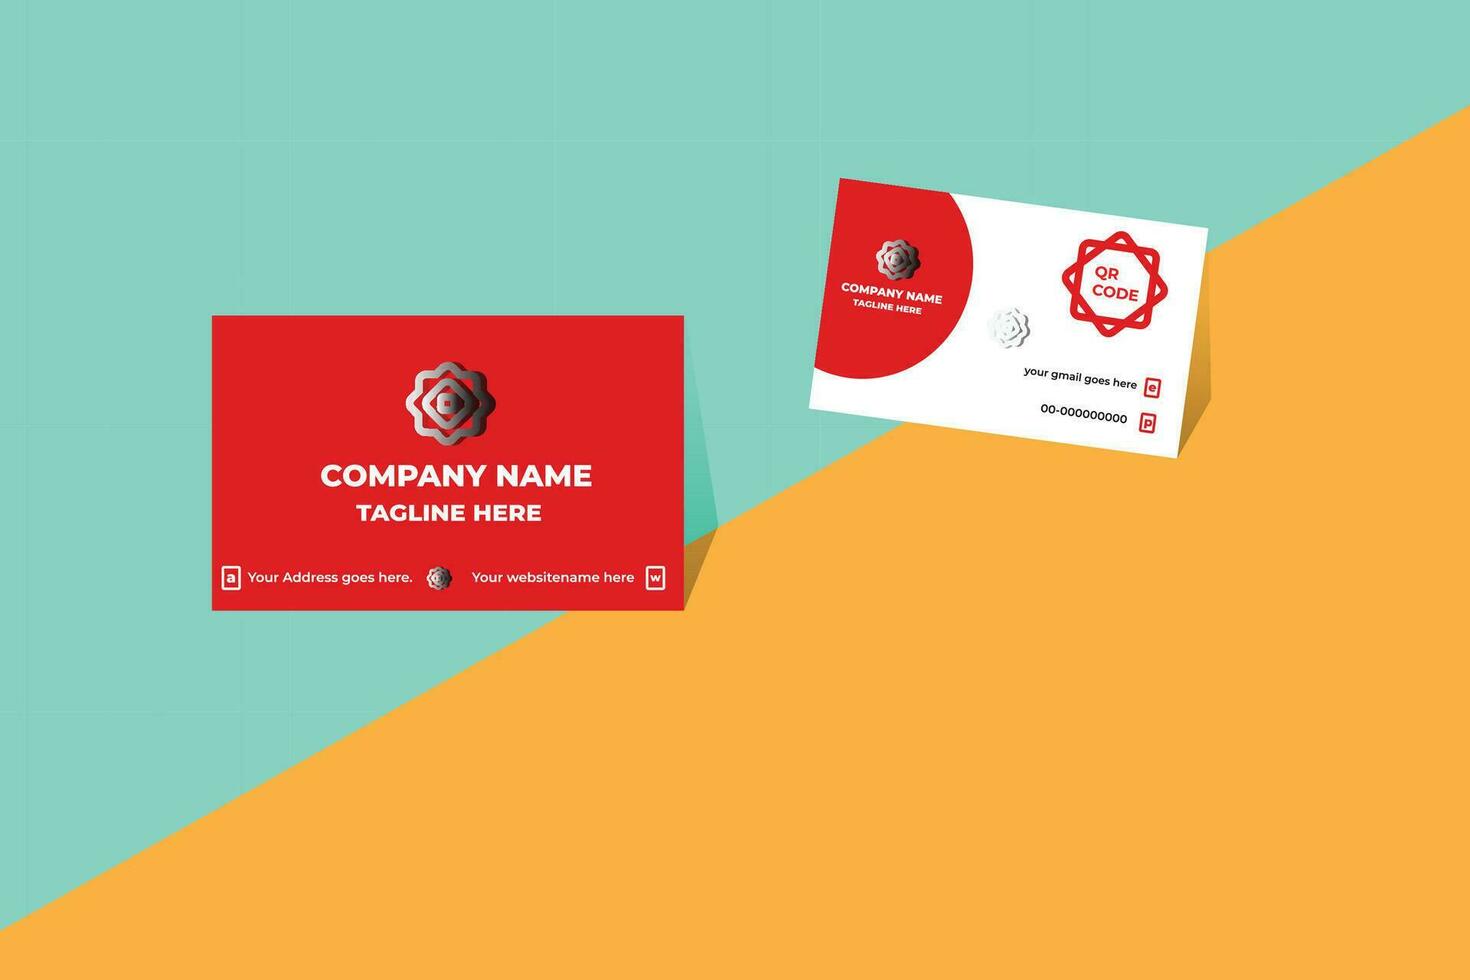 diseño de plantilla de tarjeta de visita corporativa limpia y simple moderna creativa vector